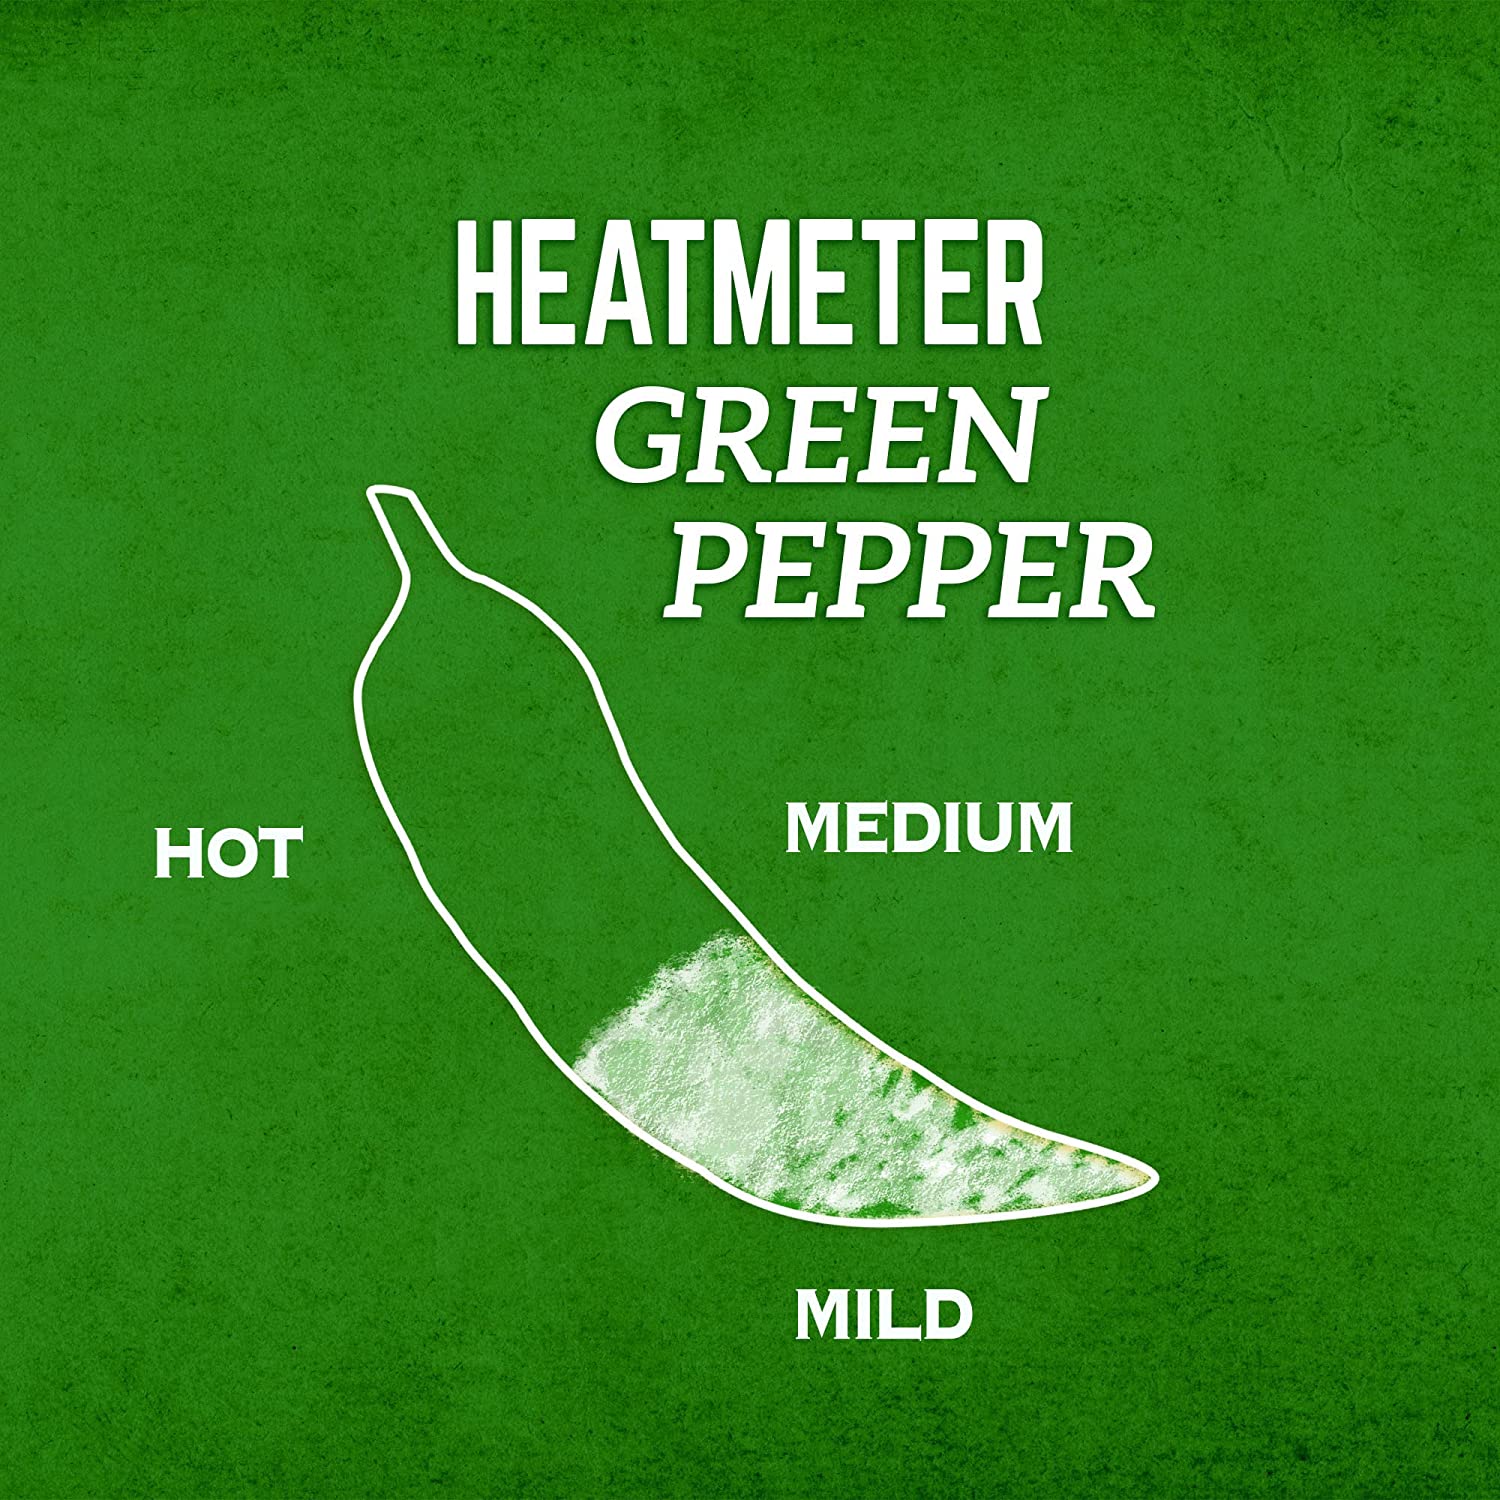 Cholula Green Pepper Hot Sauce 150mL